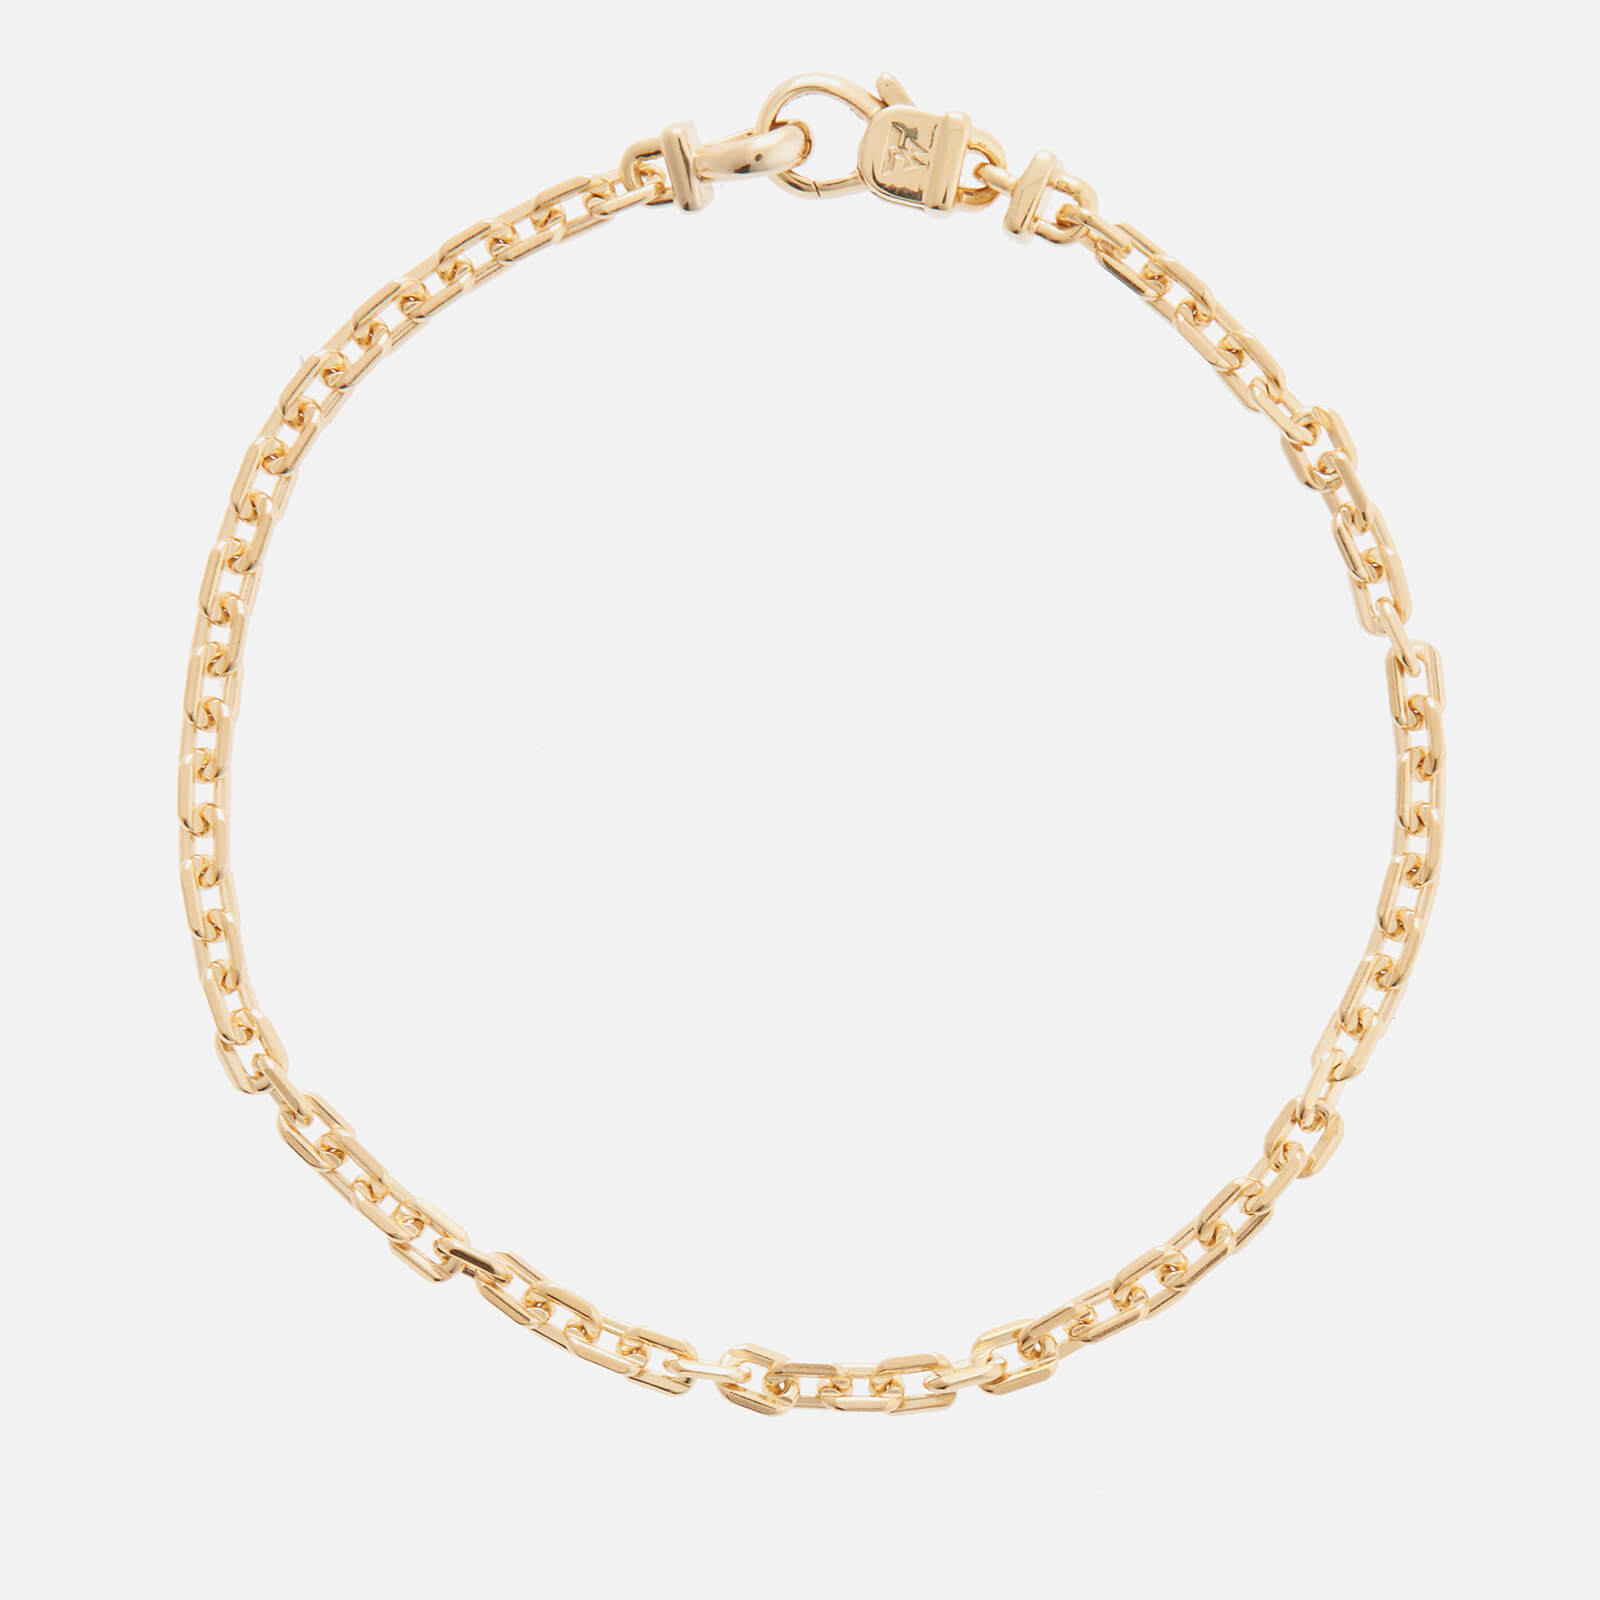 Tom Wood Men's Anker Bracelet - Gold - S/7 Inches